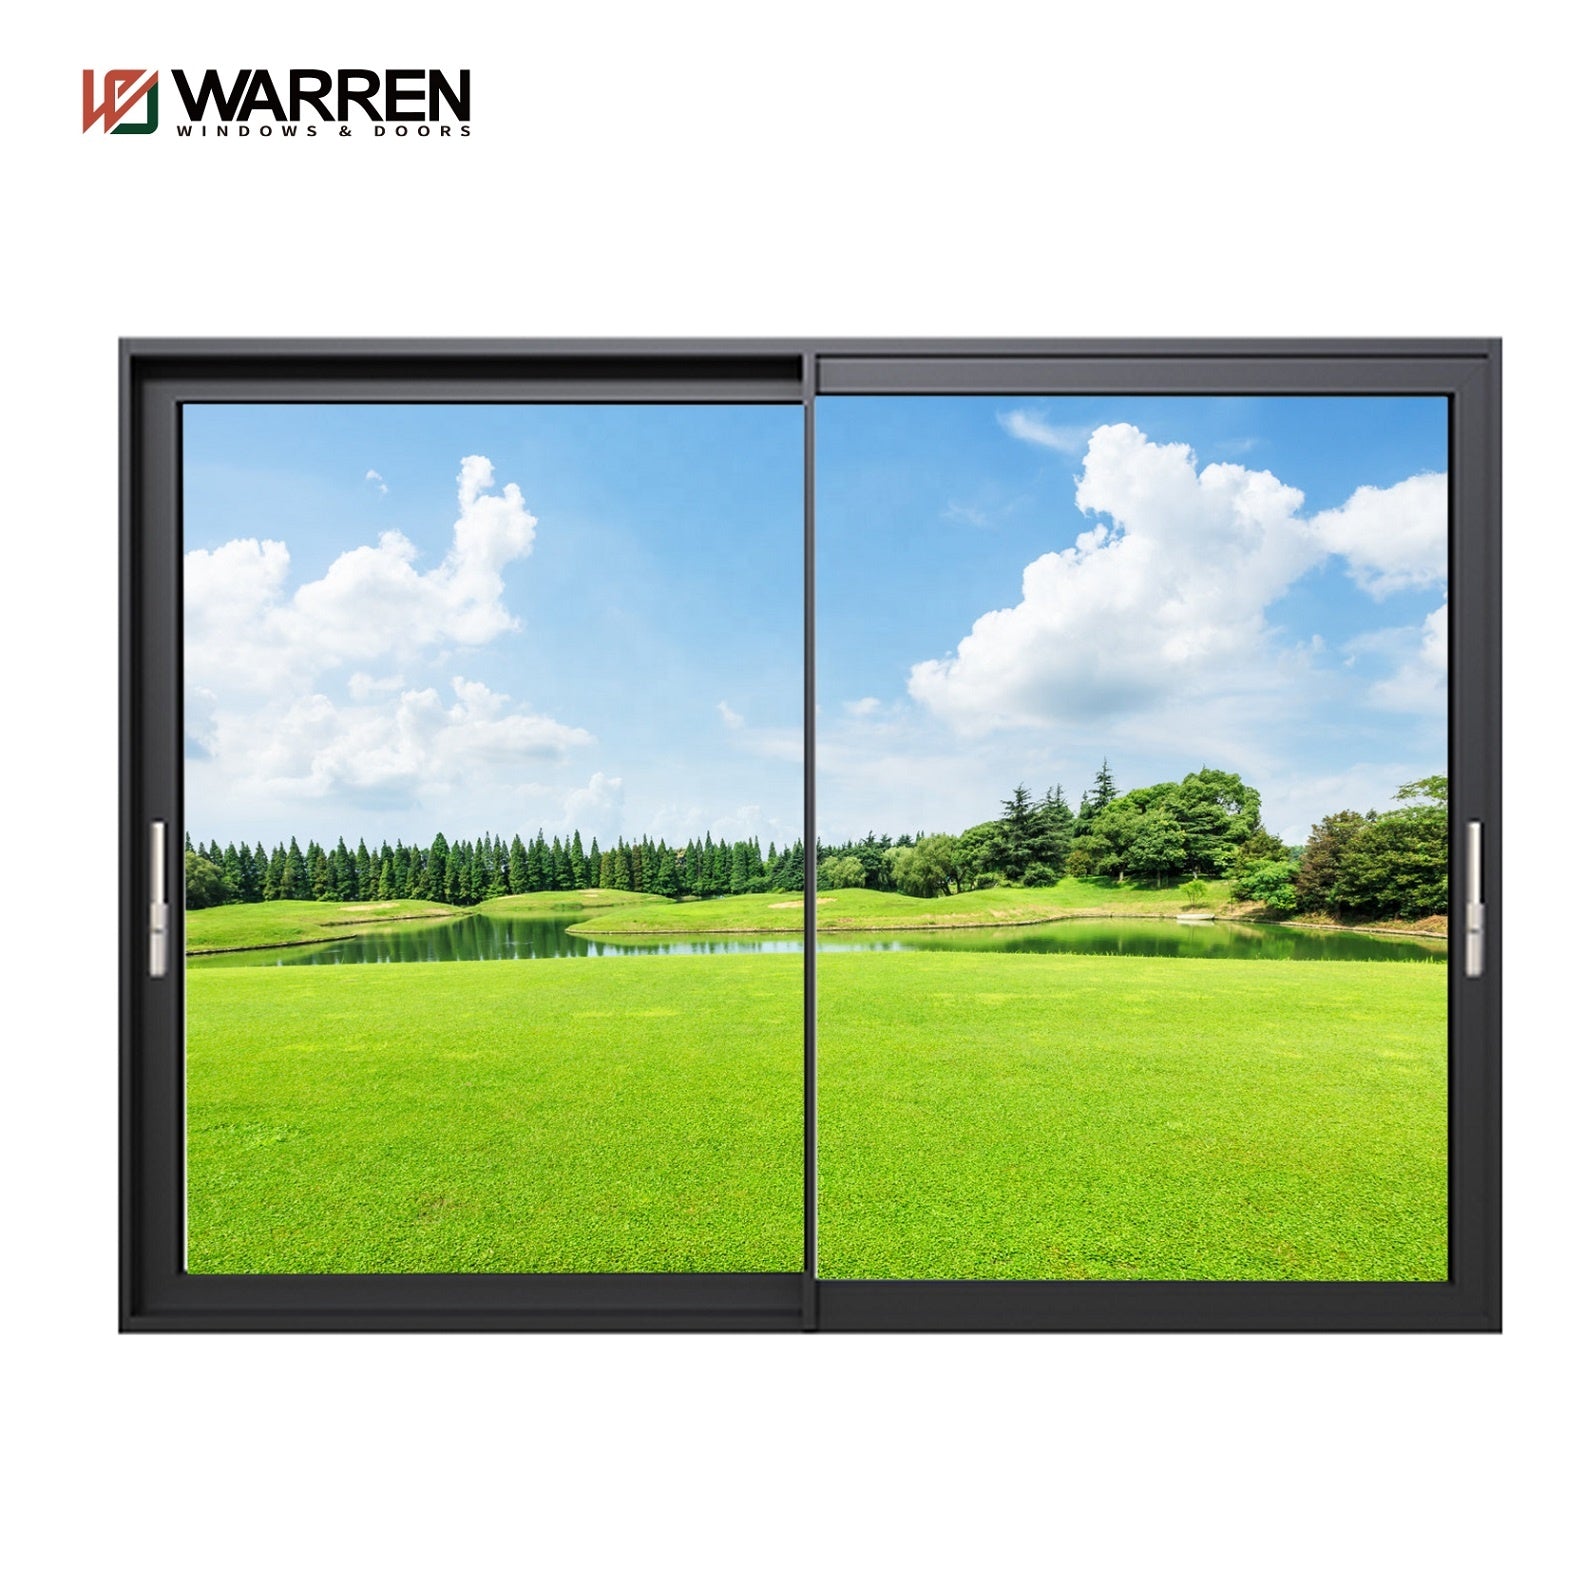 Warren aluminum Glass Sliding Door Wall System with Door Handle for sale